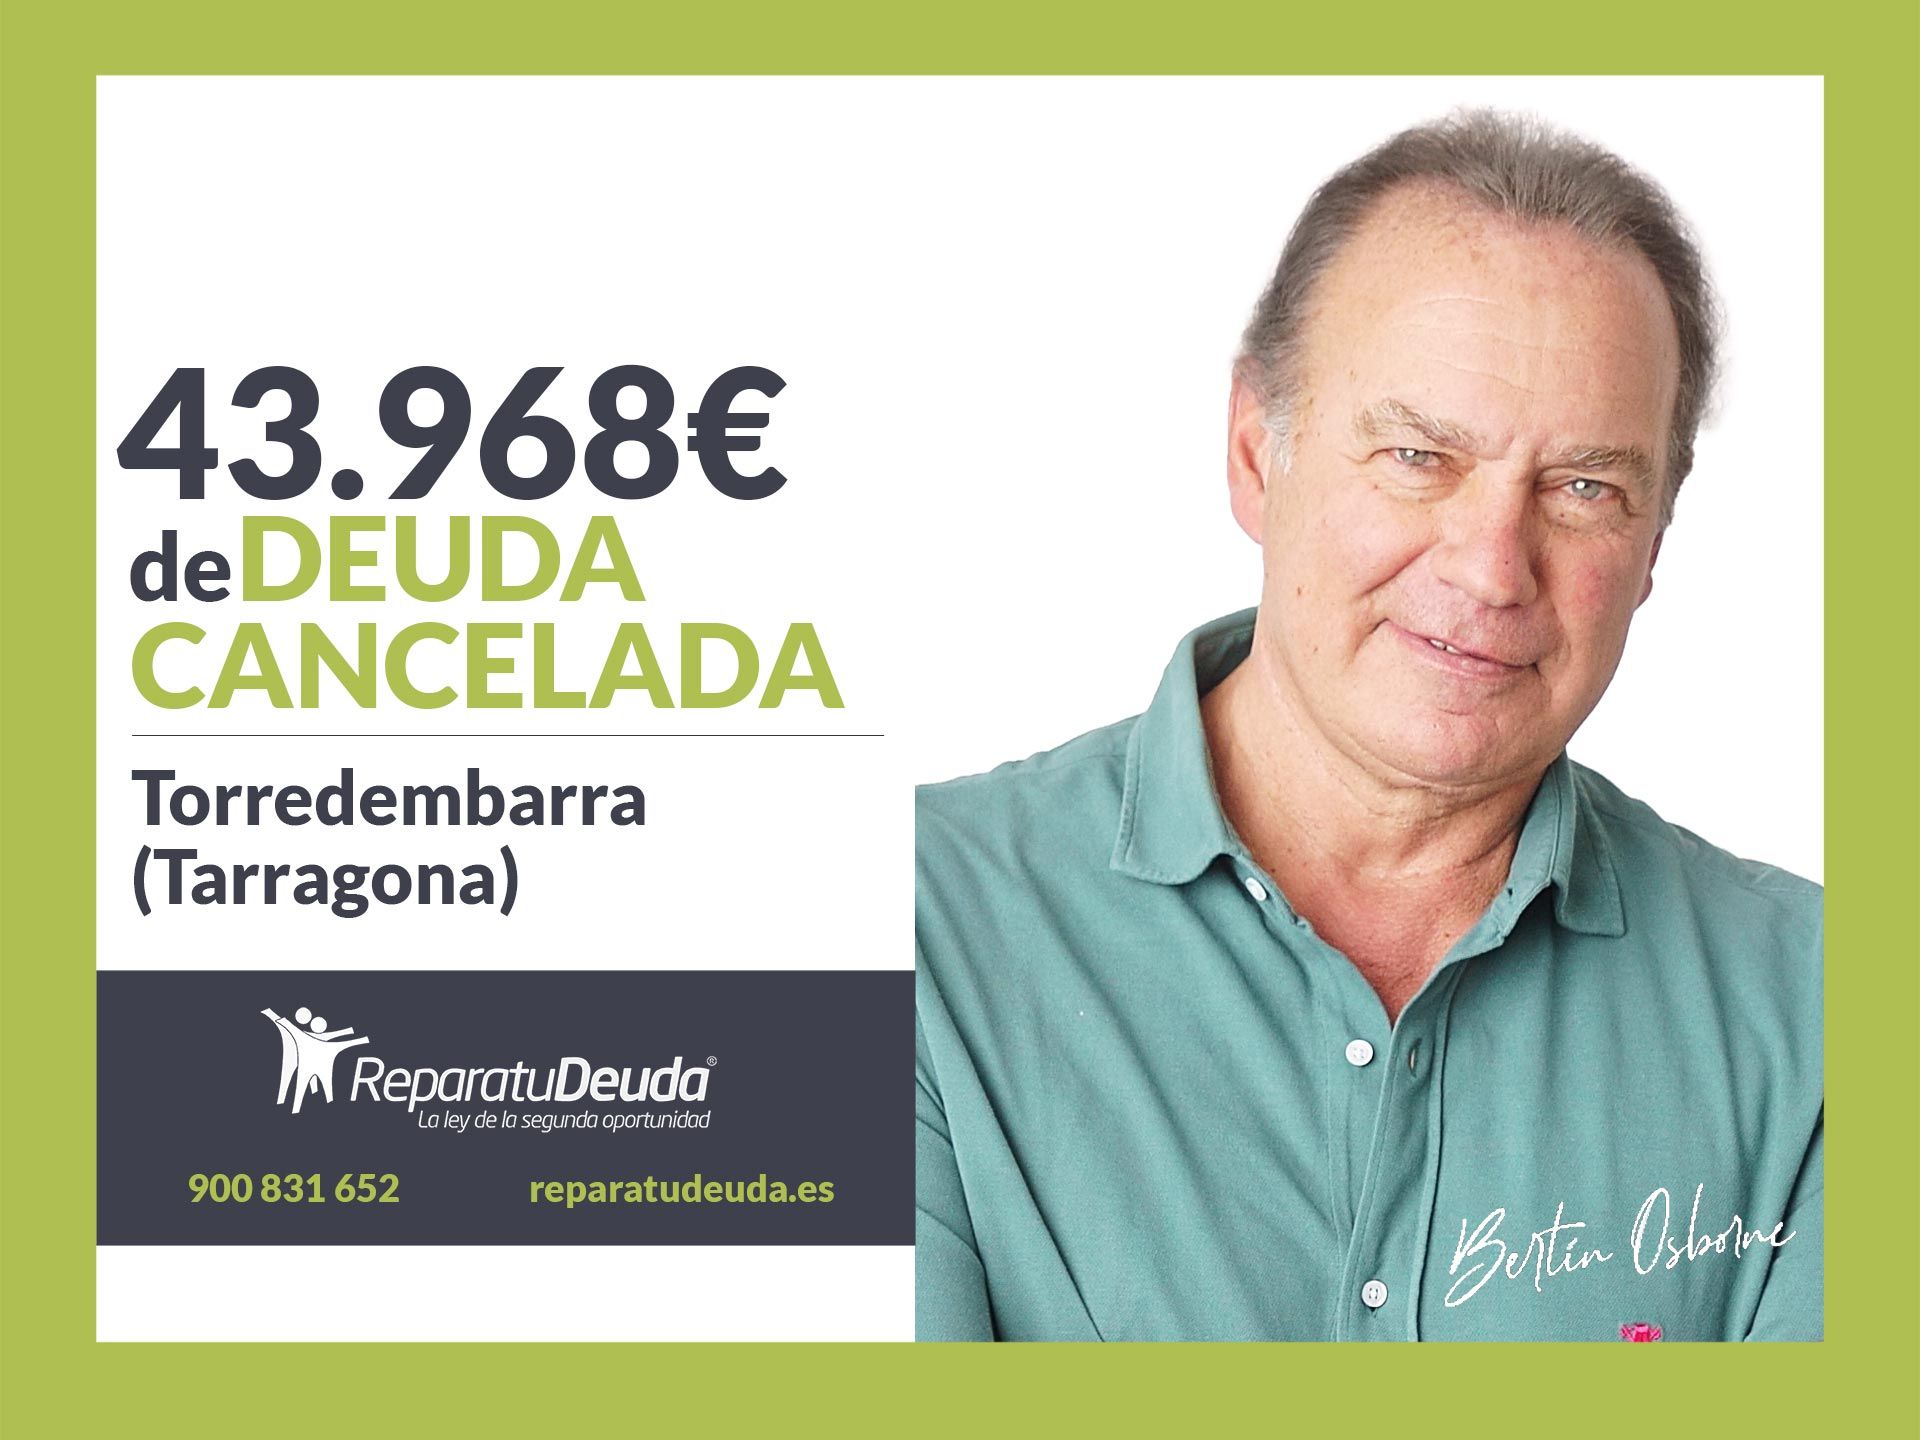 Repara tu Deuda Abogados cancela 43.968? en Torredembarra (Tarragona) con la Ley de la Segunda Oportunidad